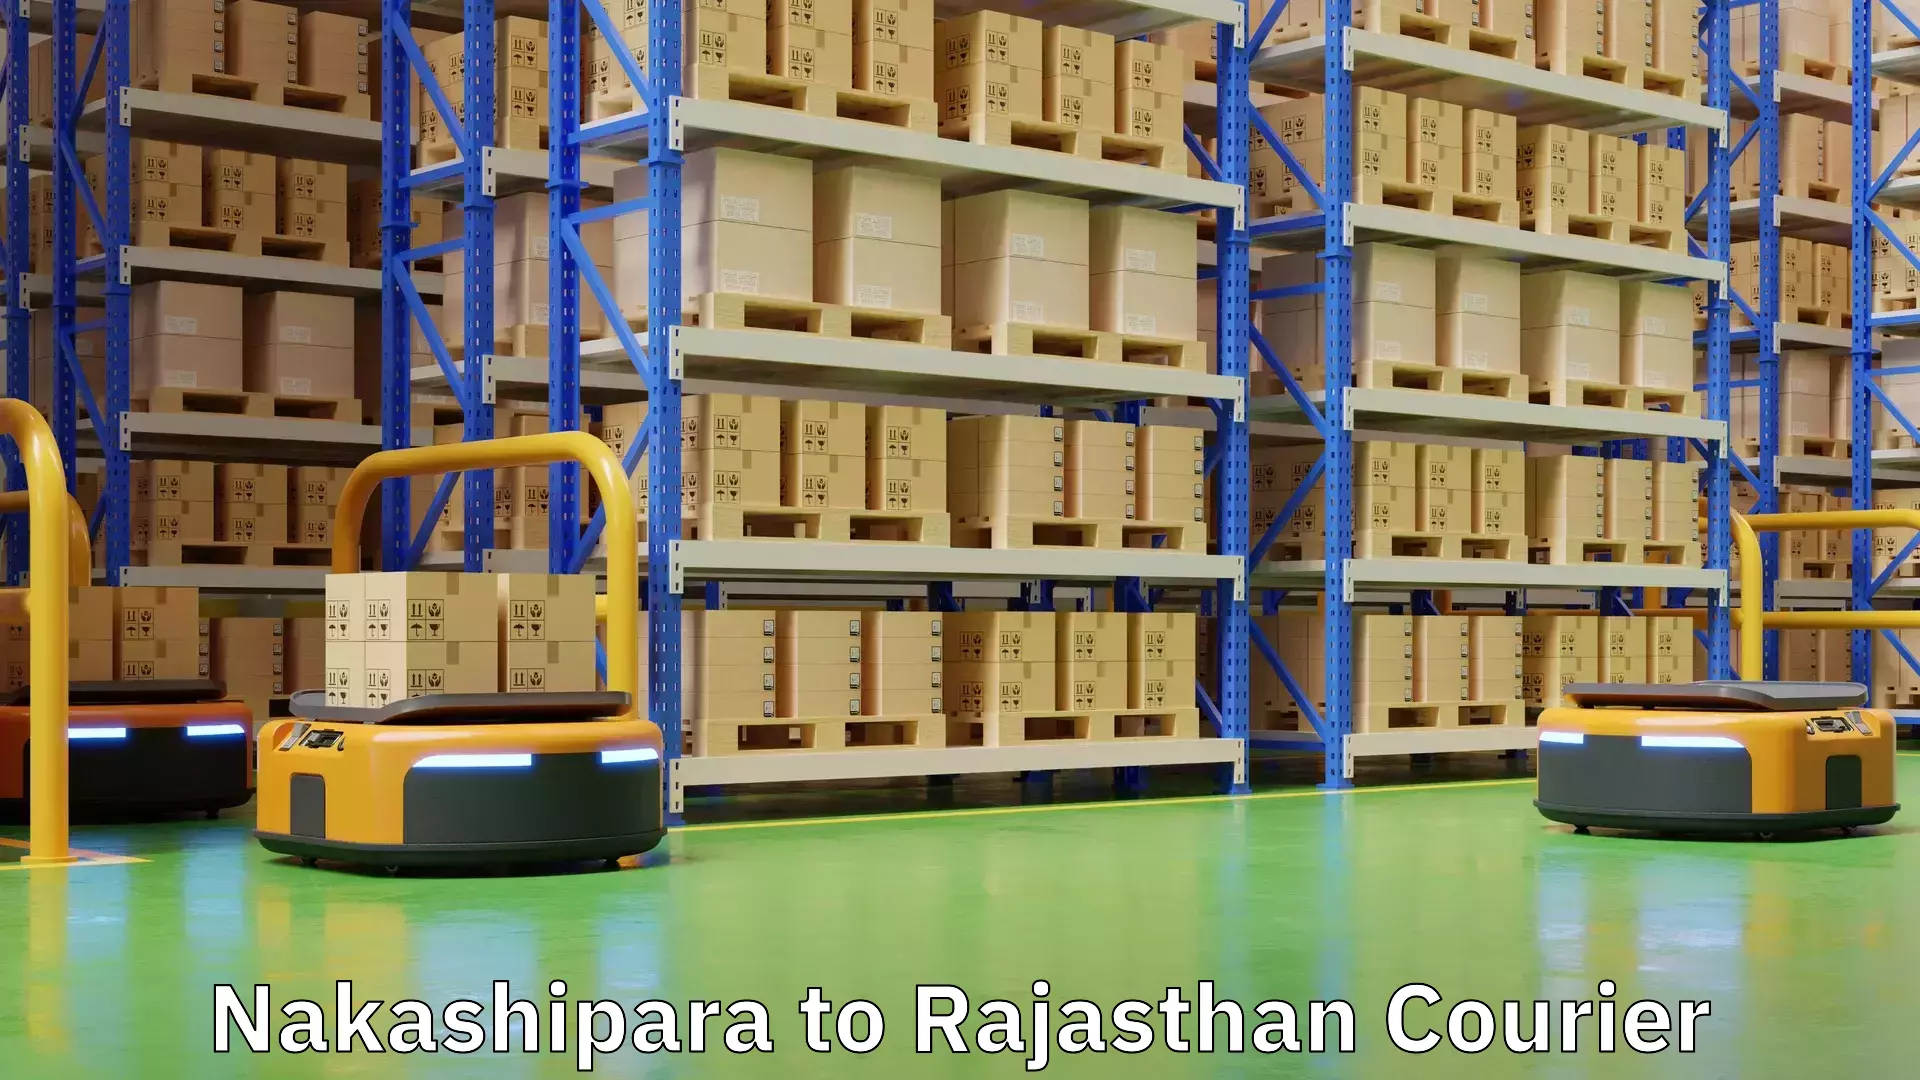 Fast shipping solutions Nakashipara to Rajasthan